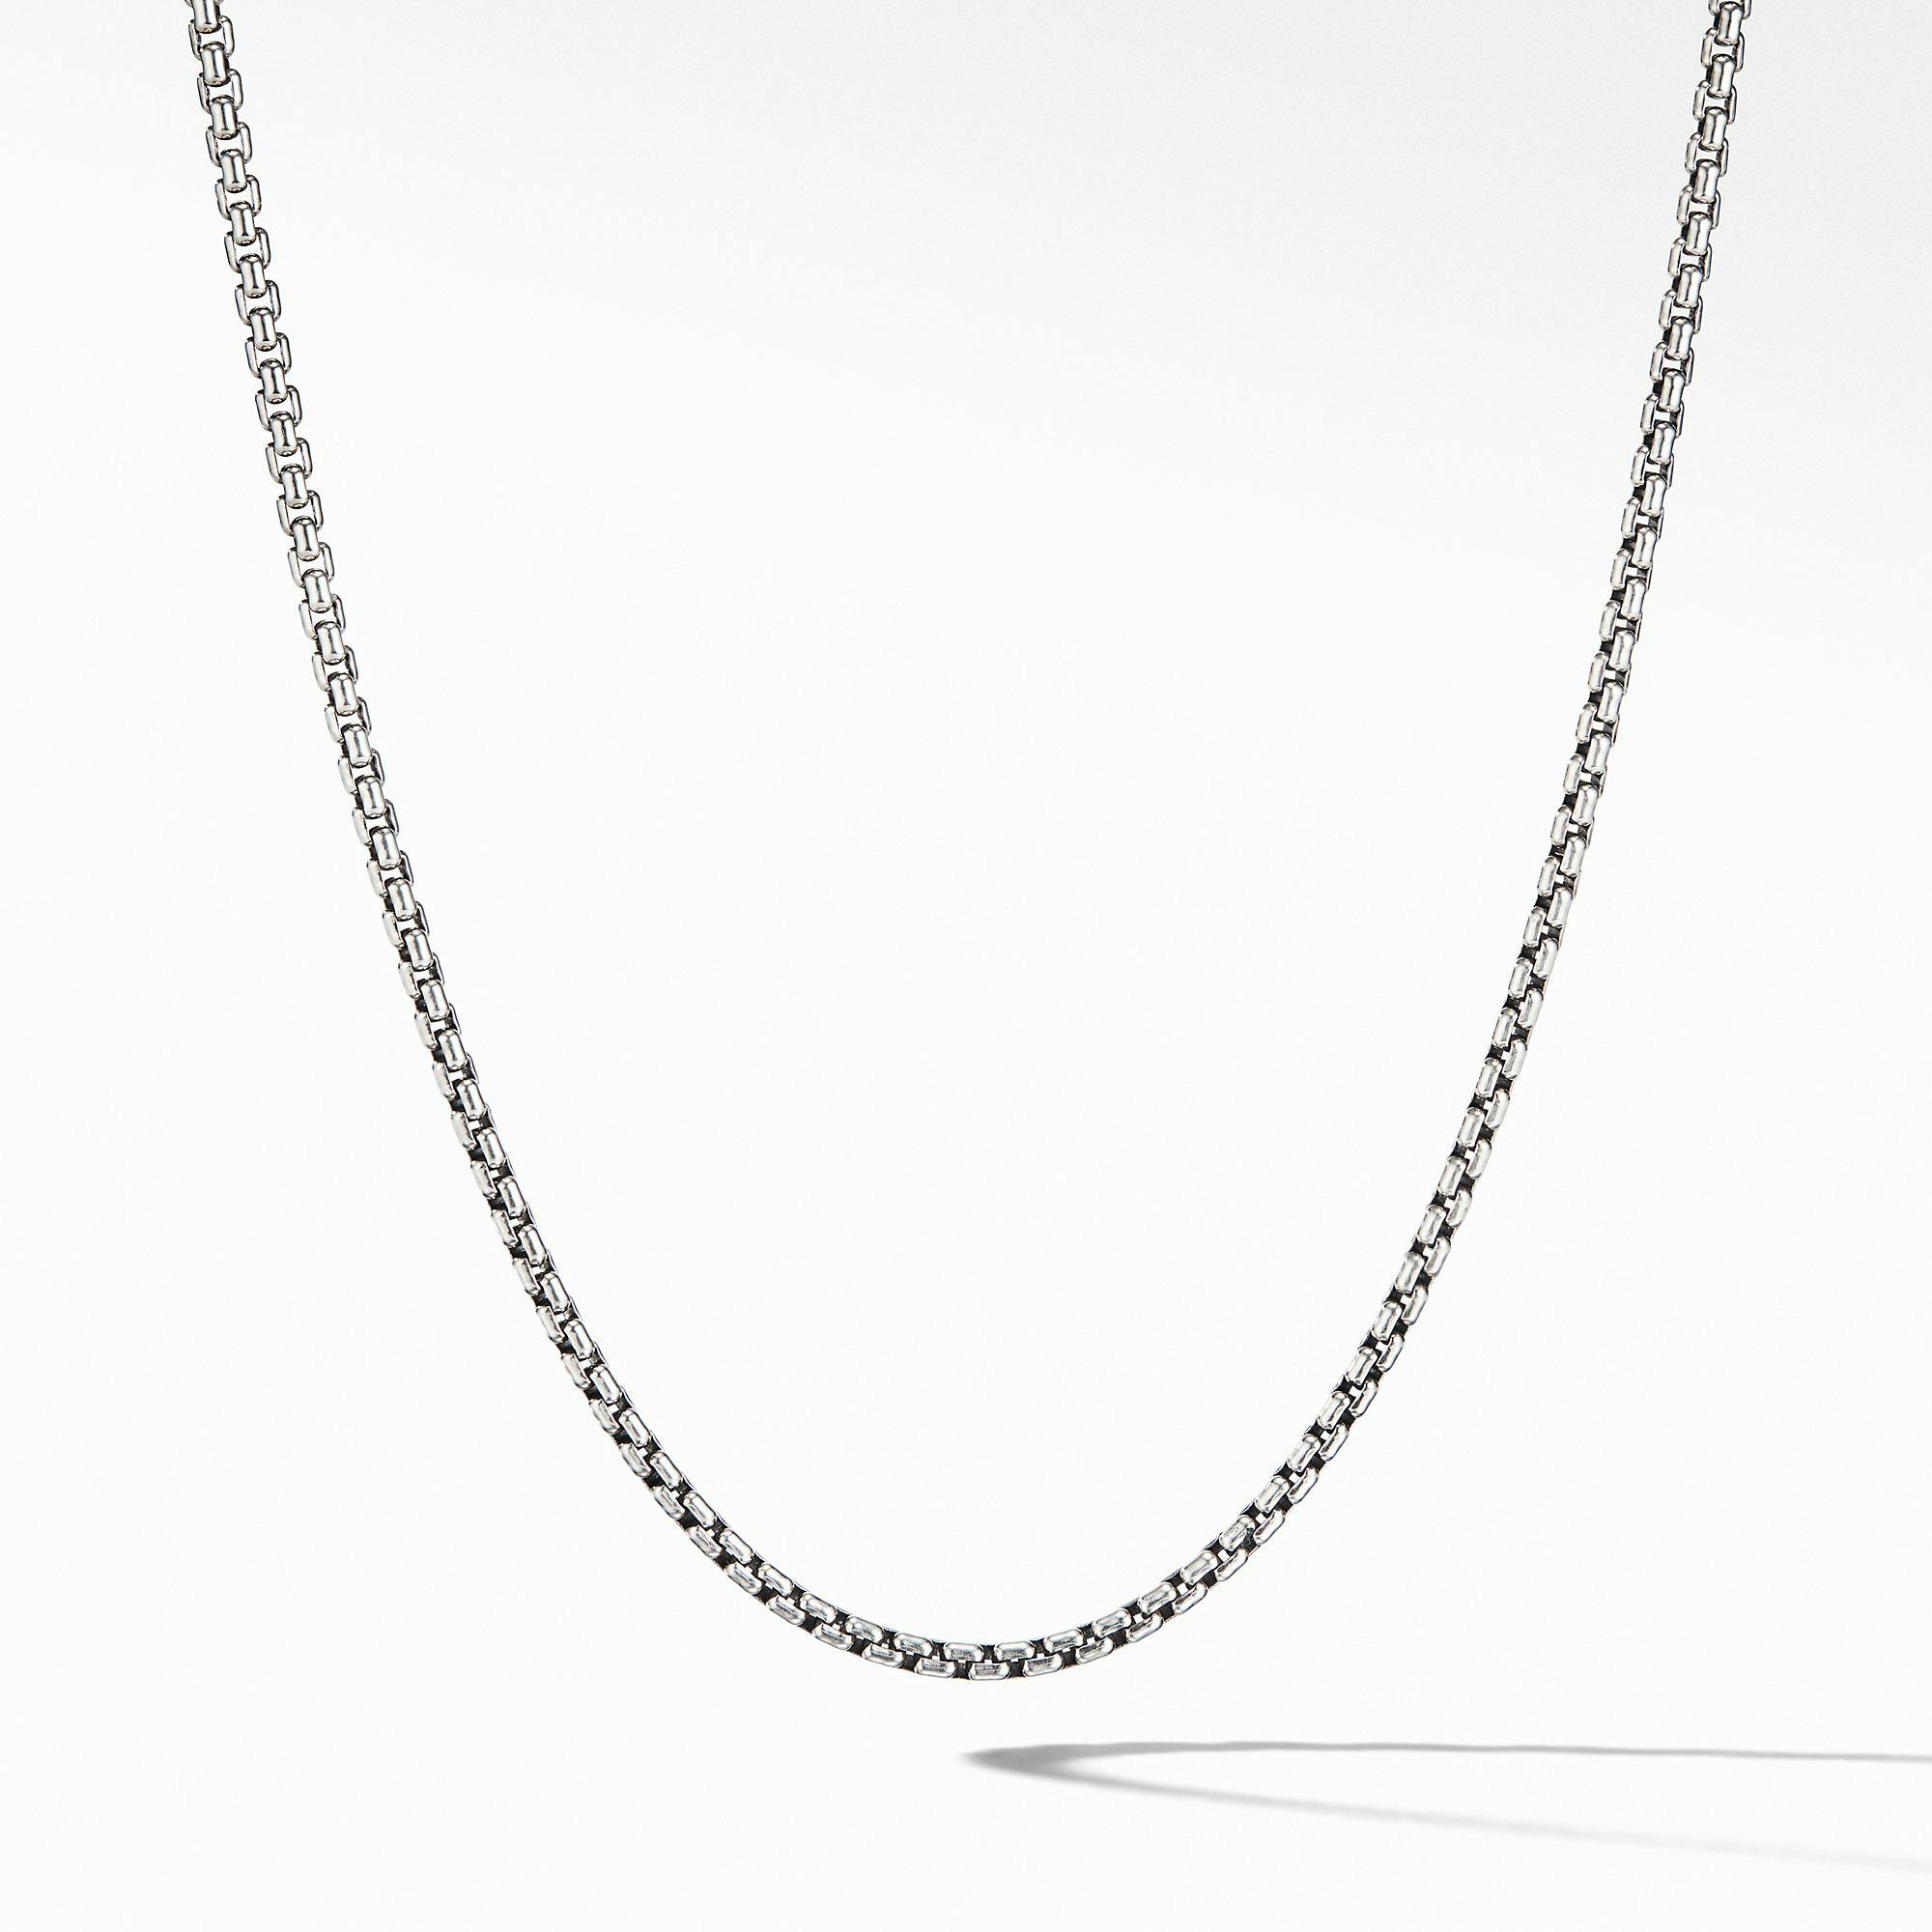 David Yurman Men's small Box Chain Necklace in Sterling Silver, 24"